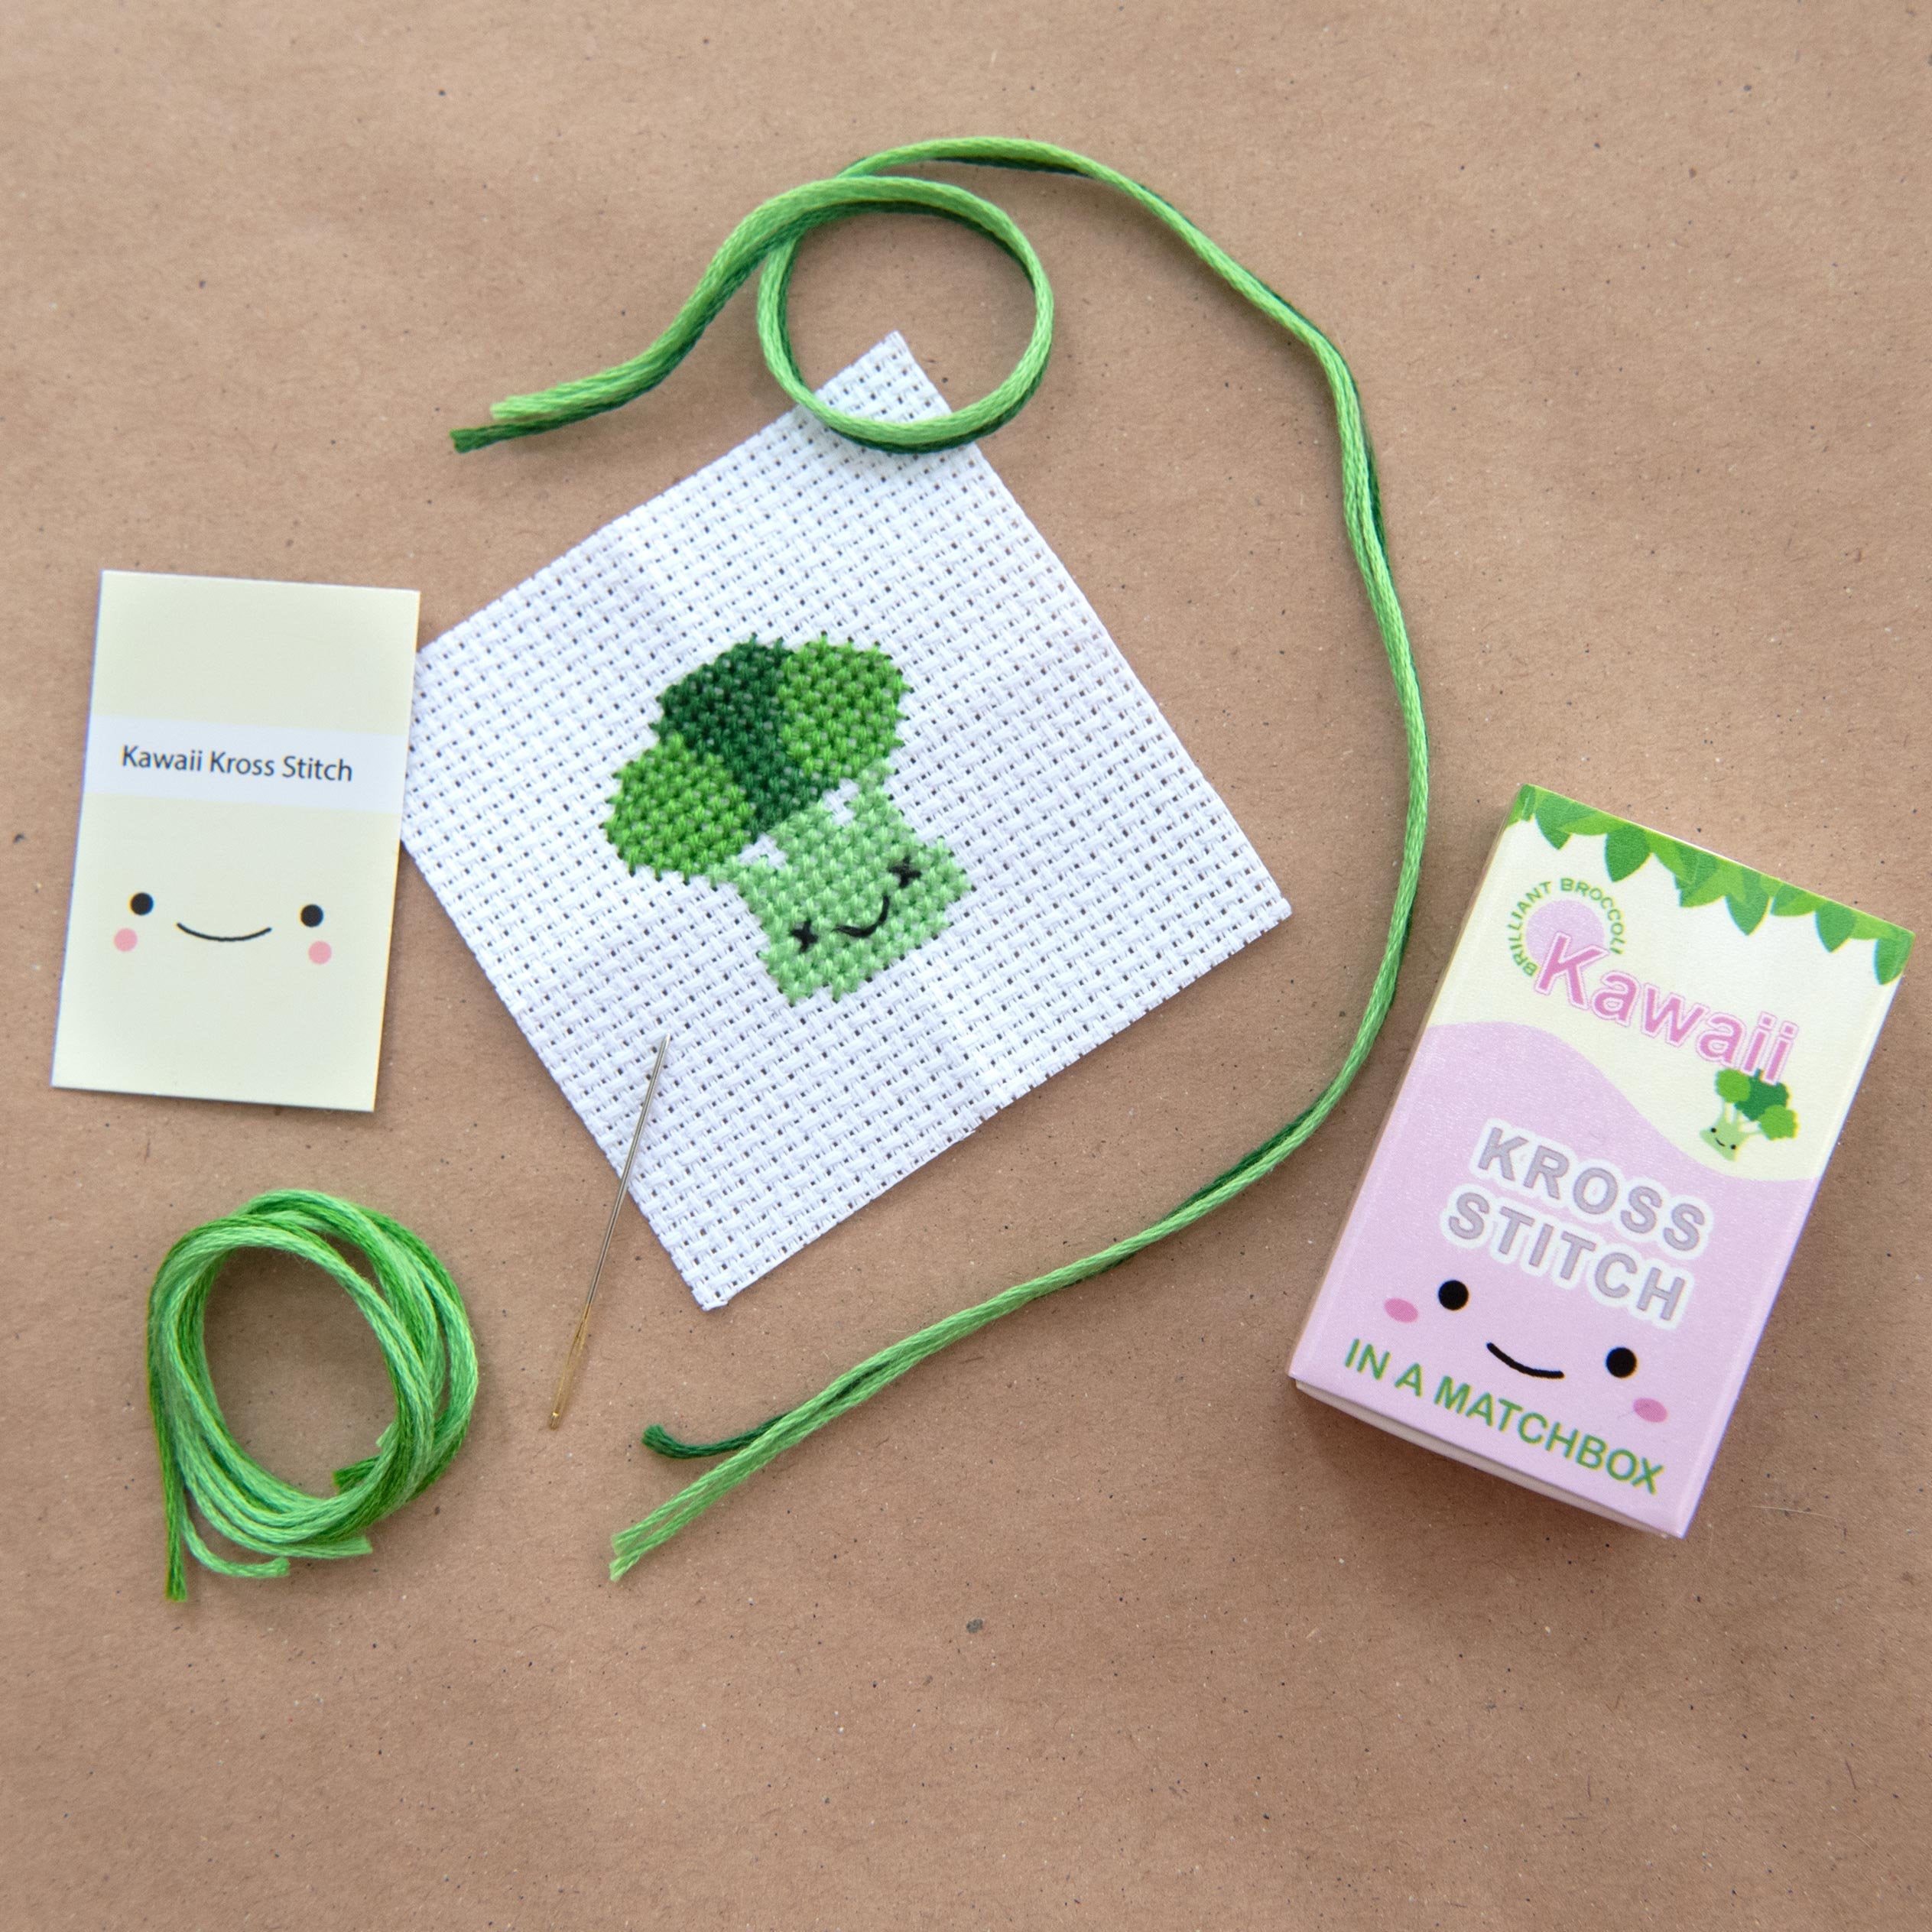 Mini Cross Stitch Kit With Kawaii Broccoli In A Matchbox